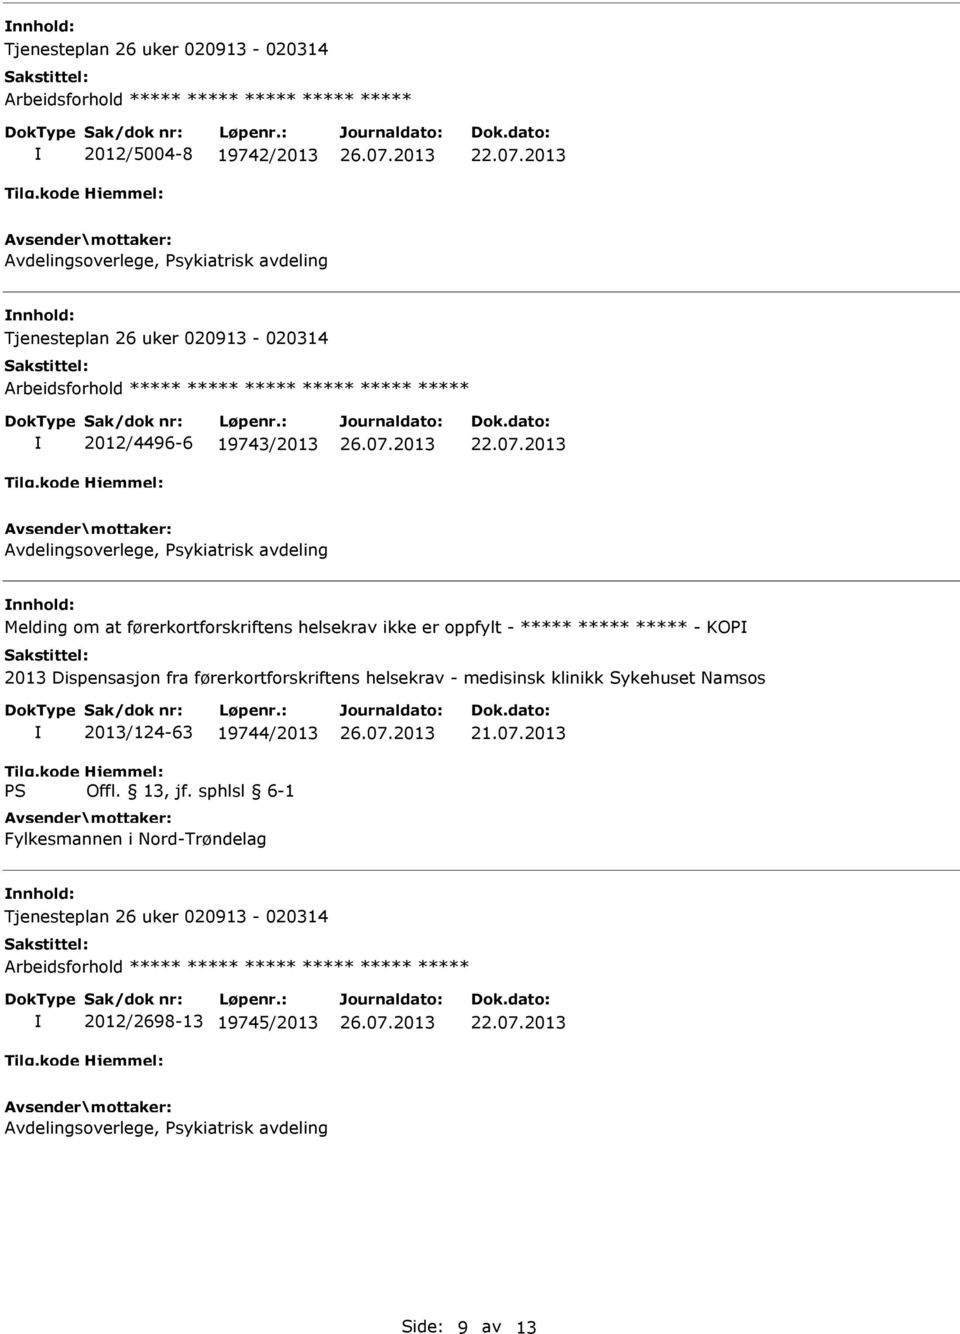 Dispensasjon fra førerkortforskriftens helsekrav - medisinsk klinikk Sykehuset Namsos 2013/124-63 19744/2013